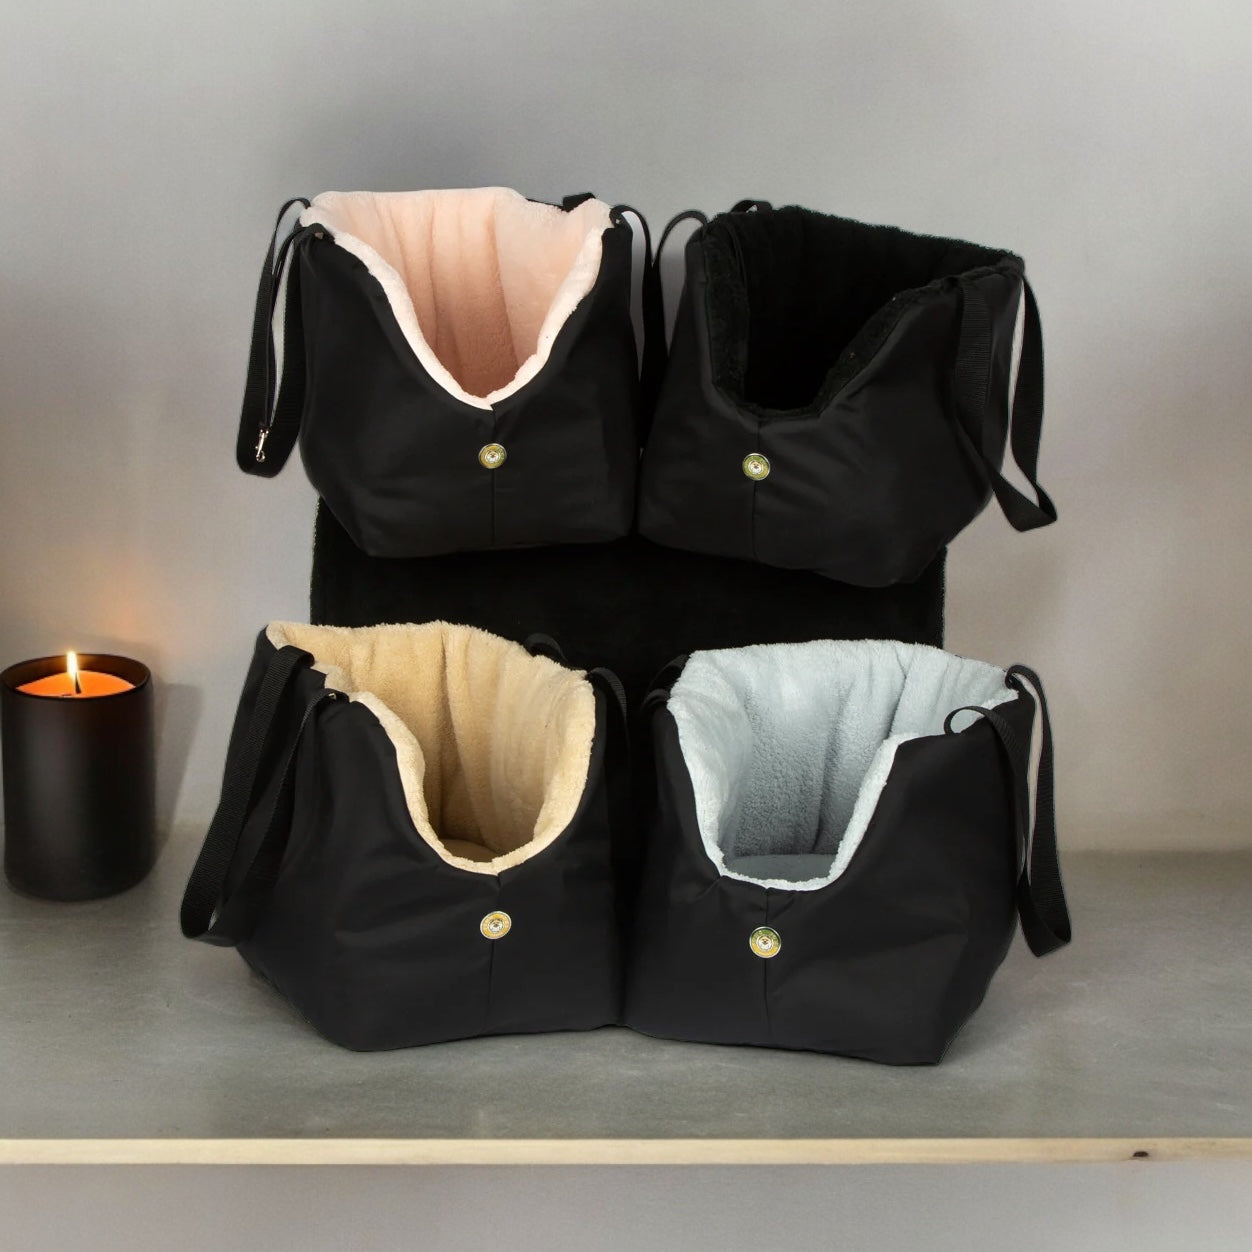 Suzy's Fashion Rainy Bear Sac de transport pour chien noir et gris avec fermeture éclair